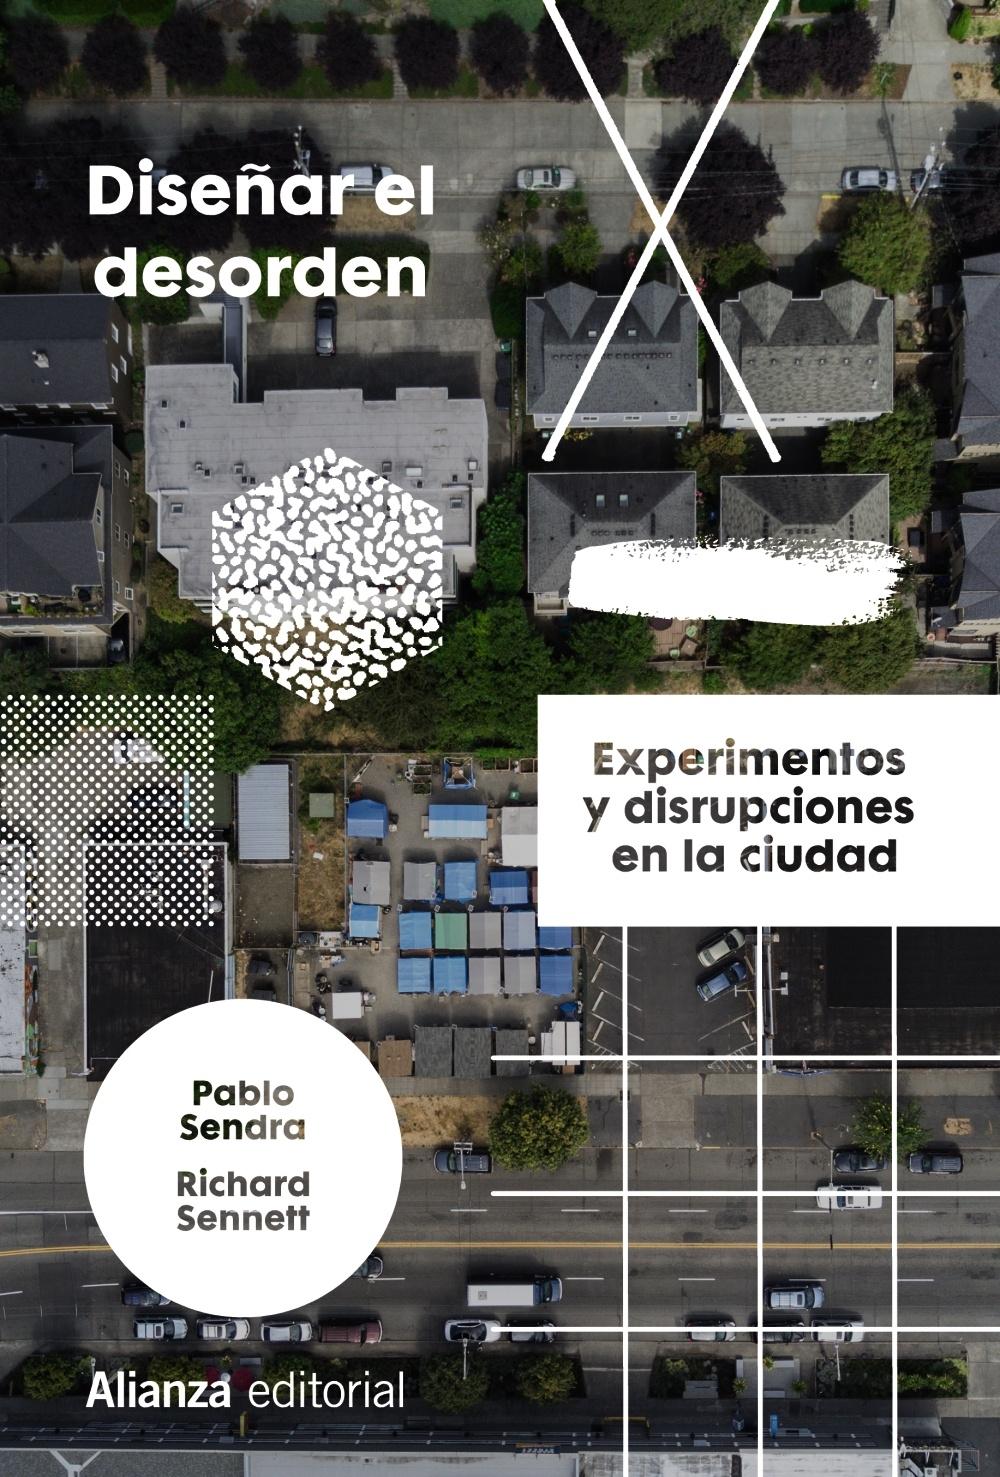 Diseñar el desorden "Experimentos y disrupciones en la ciudad"